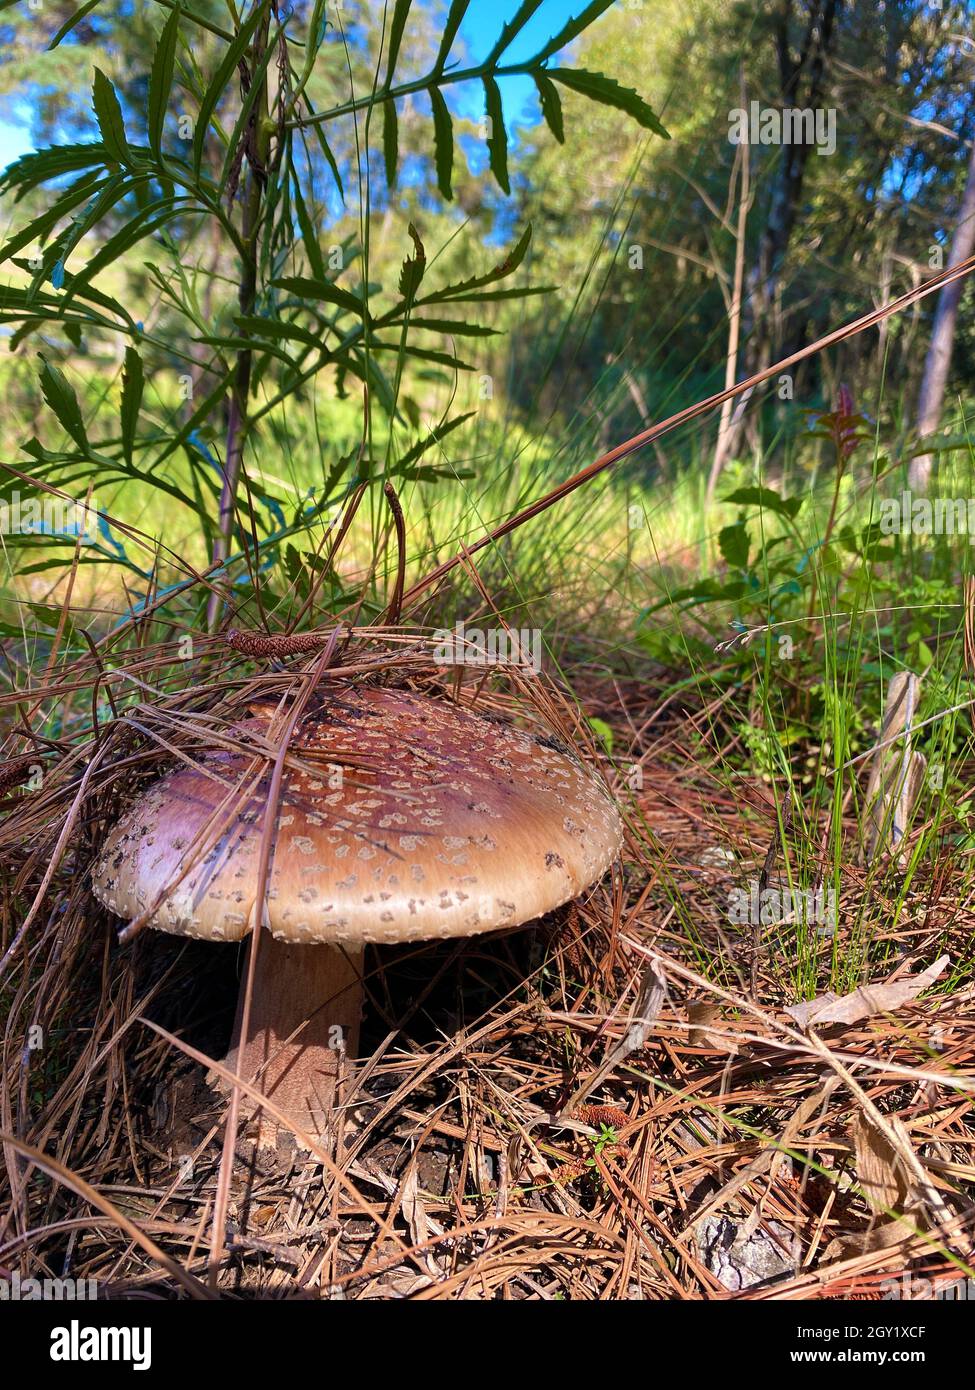 Pilze in natura. Essbare und sogar giftige Pilze haben positive ökologische Funktionen für den Wald und die Umwelt. Stockfoto